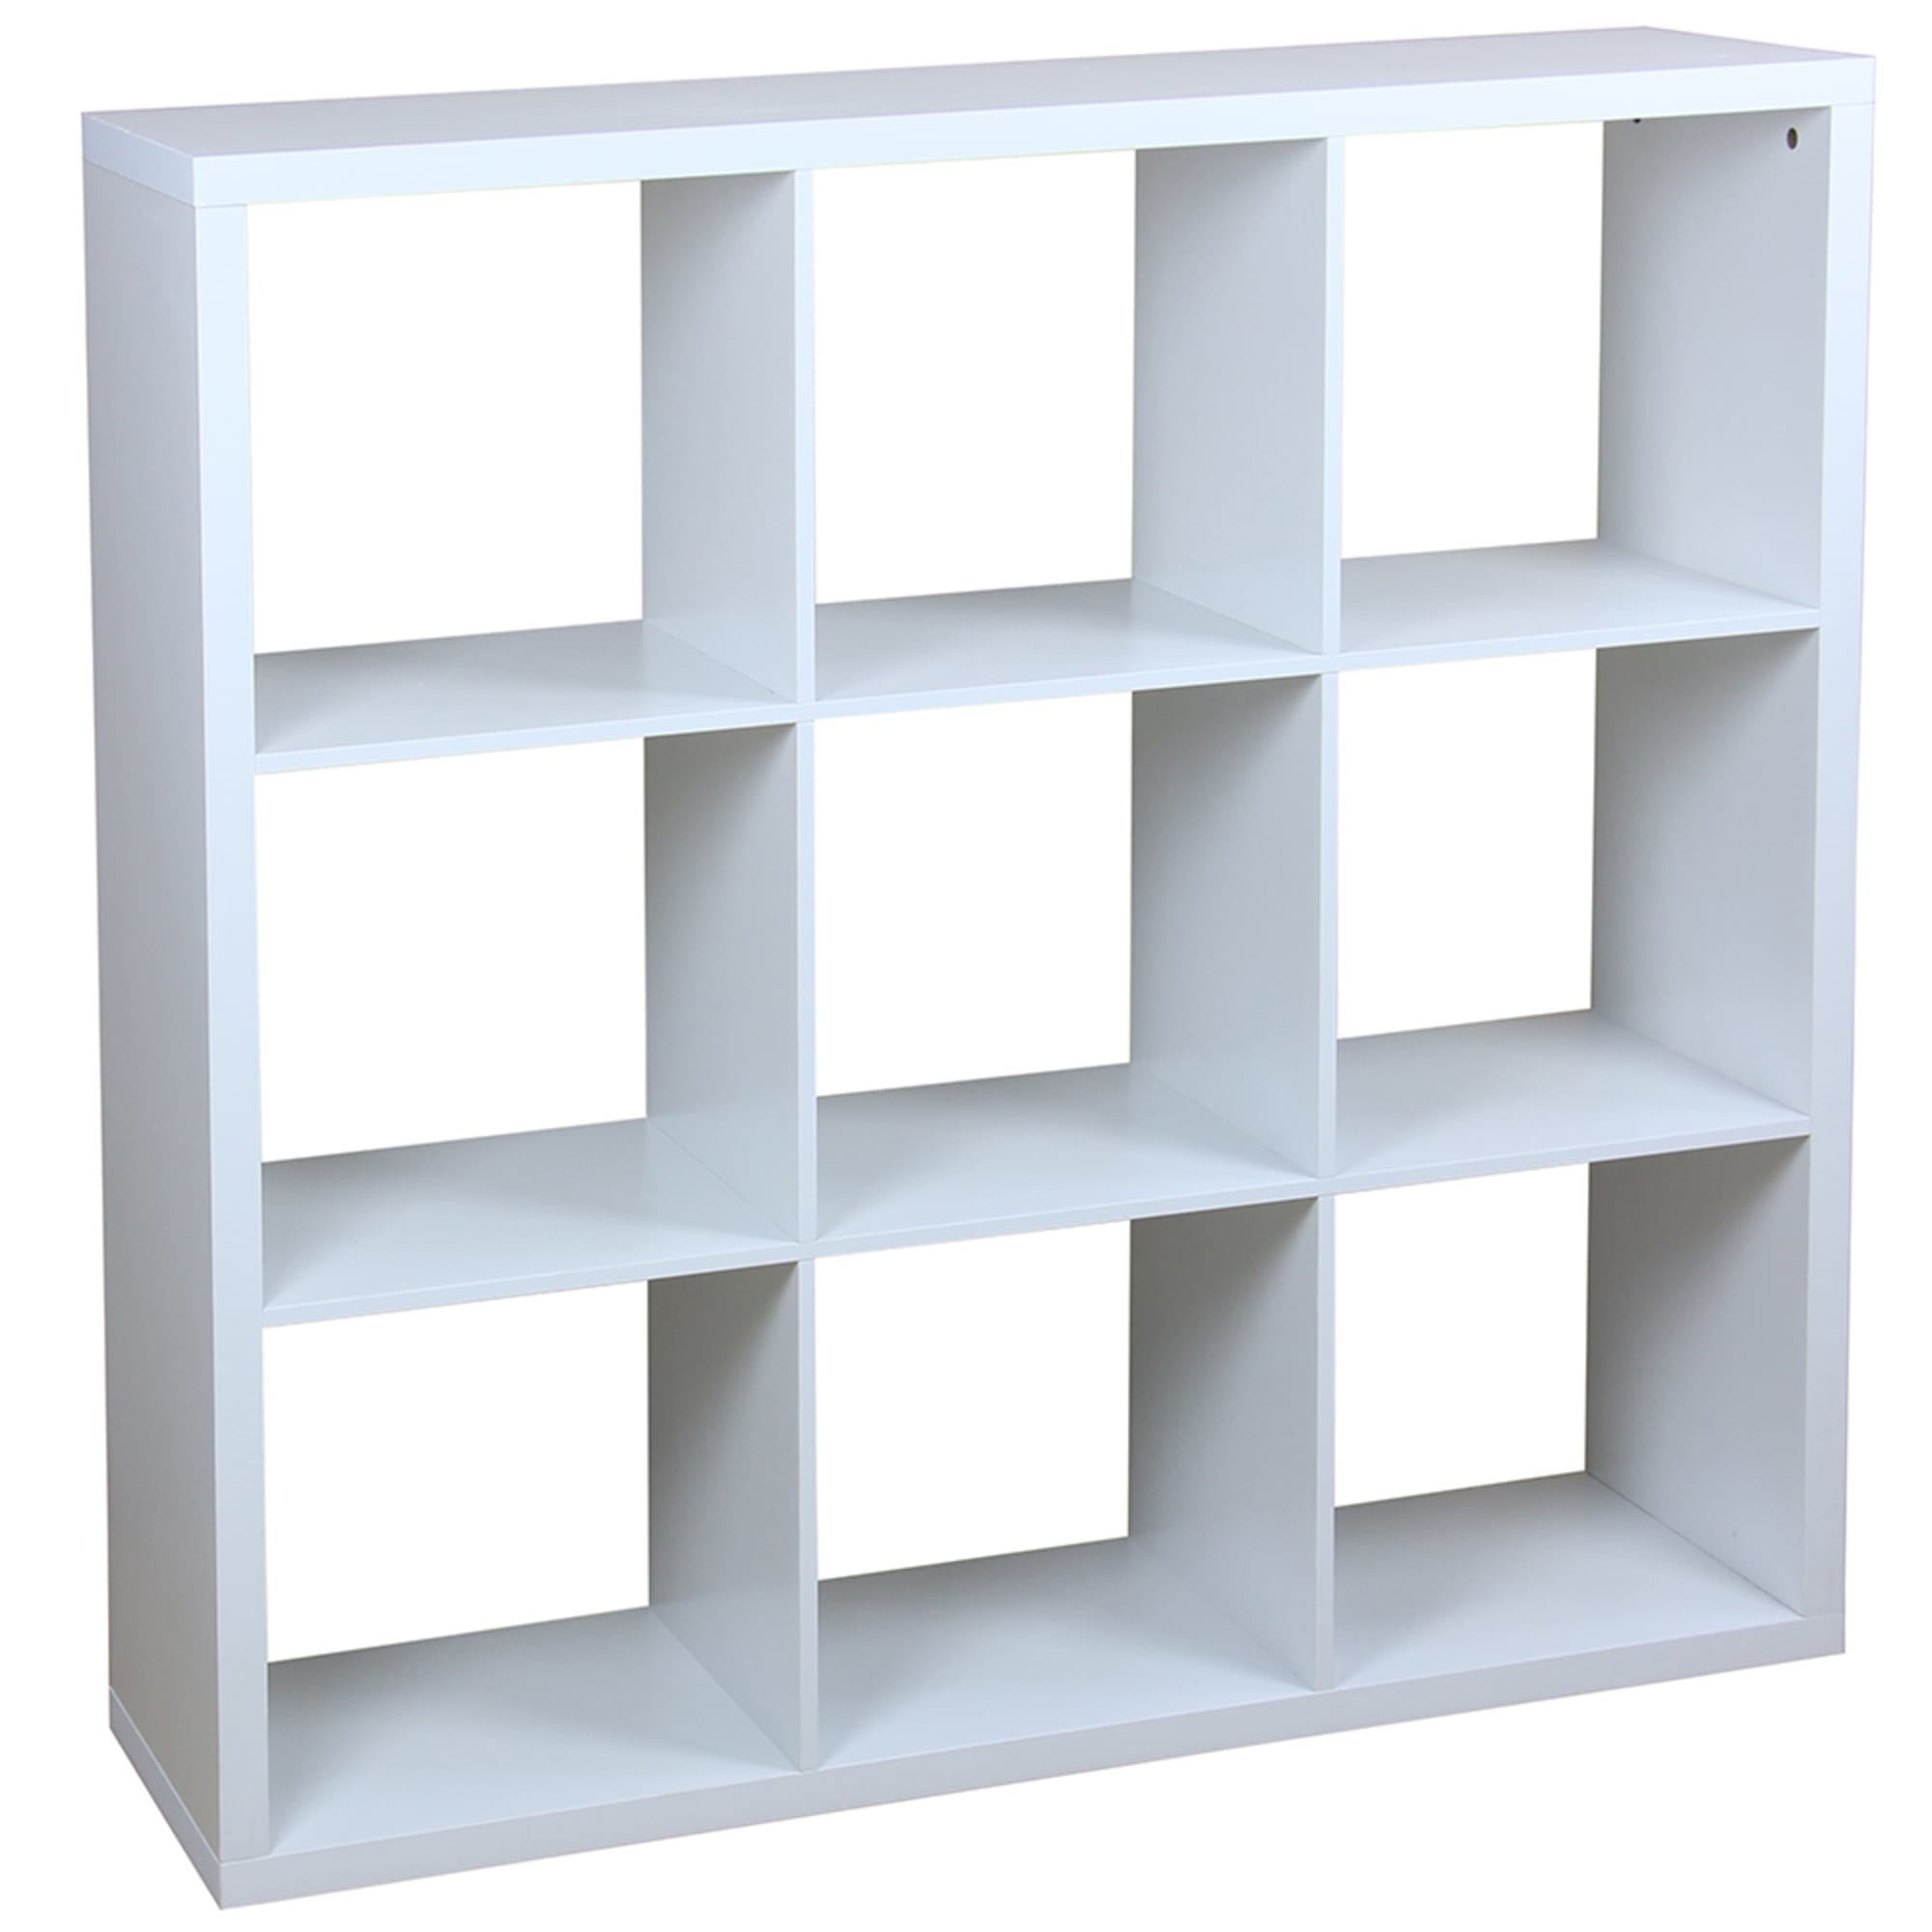 Home Basics 9 Open Cube Organizing Wood Storage Shelf, White $100 EACH, CASE PACK OF 1